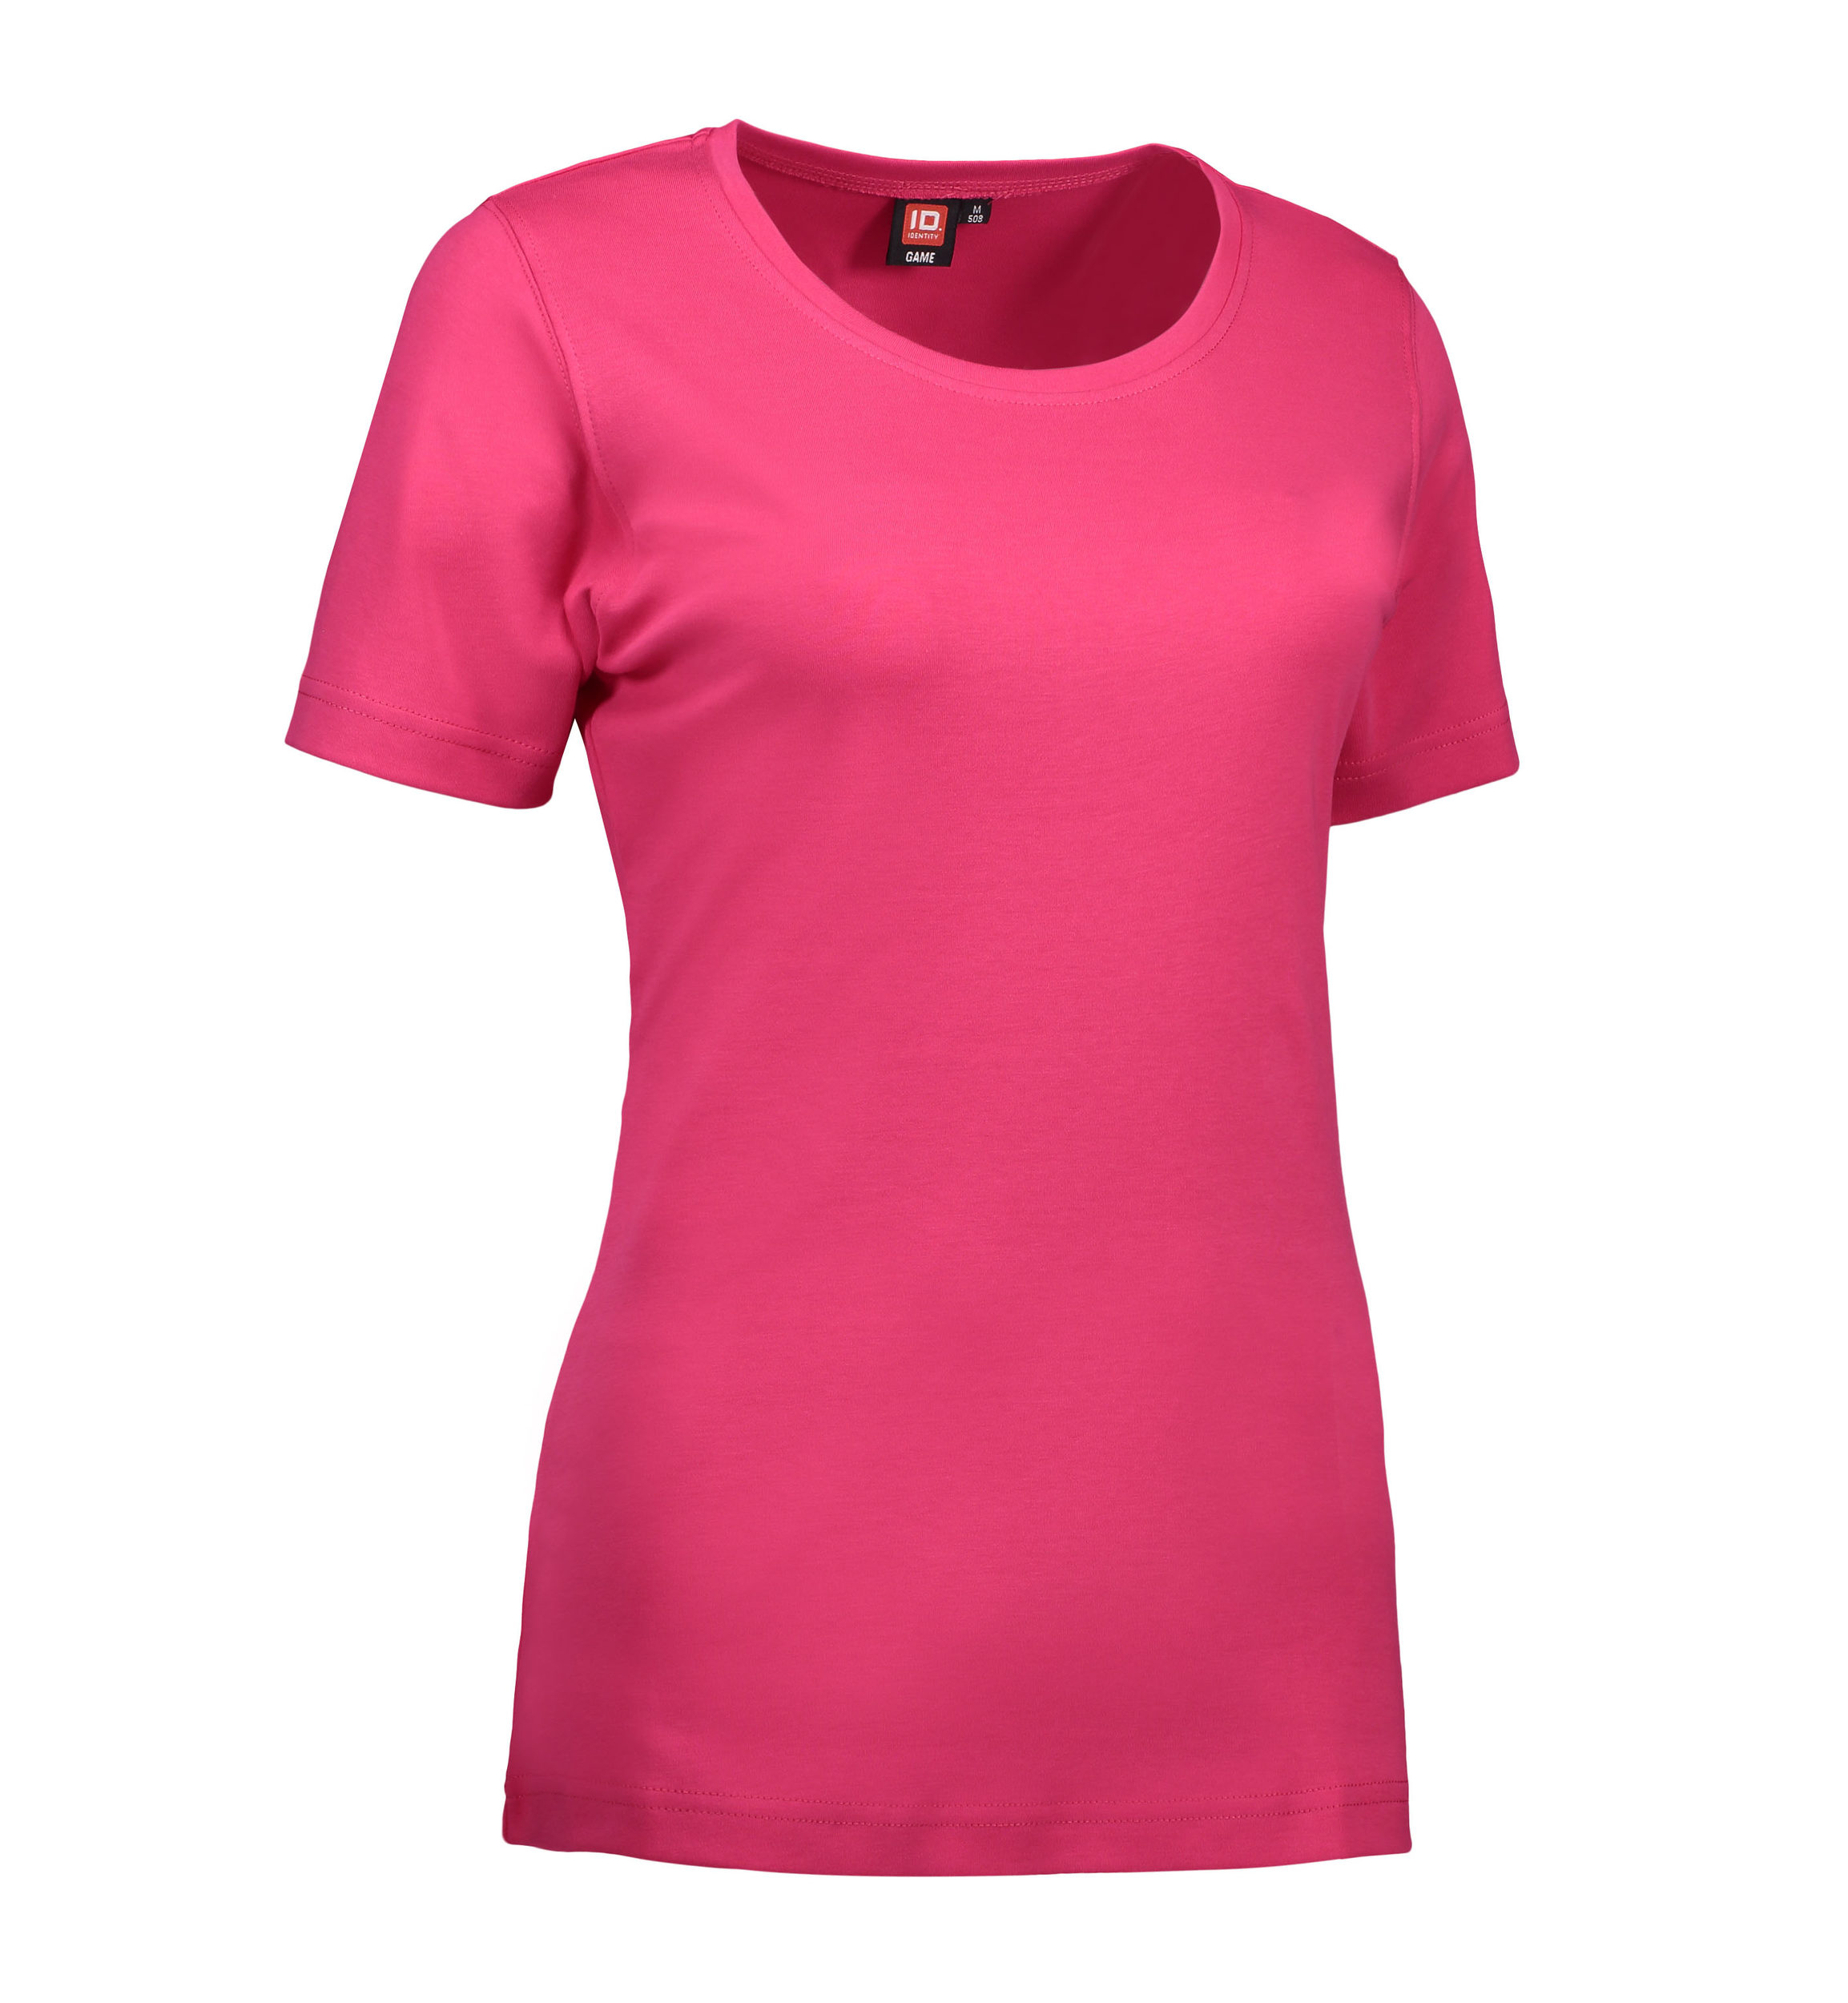 Billede af Dame t-shirt med rund hals i pink - 3XL hos Sygeplejebutikken.dk